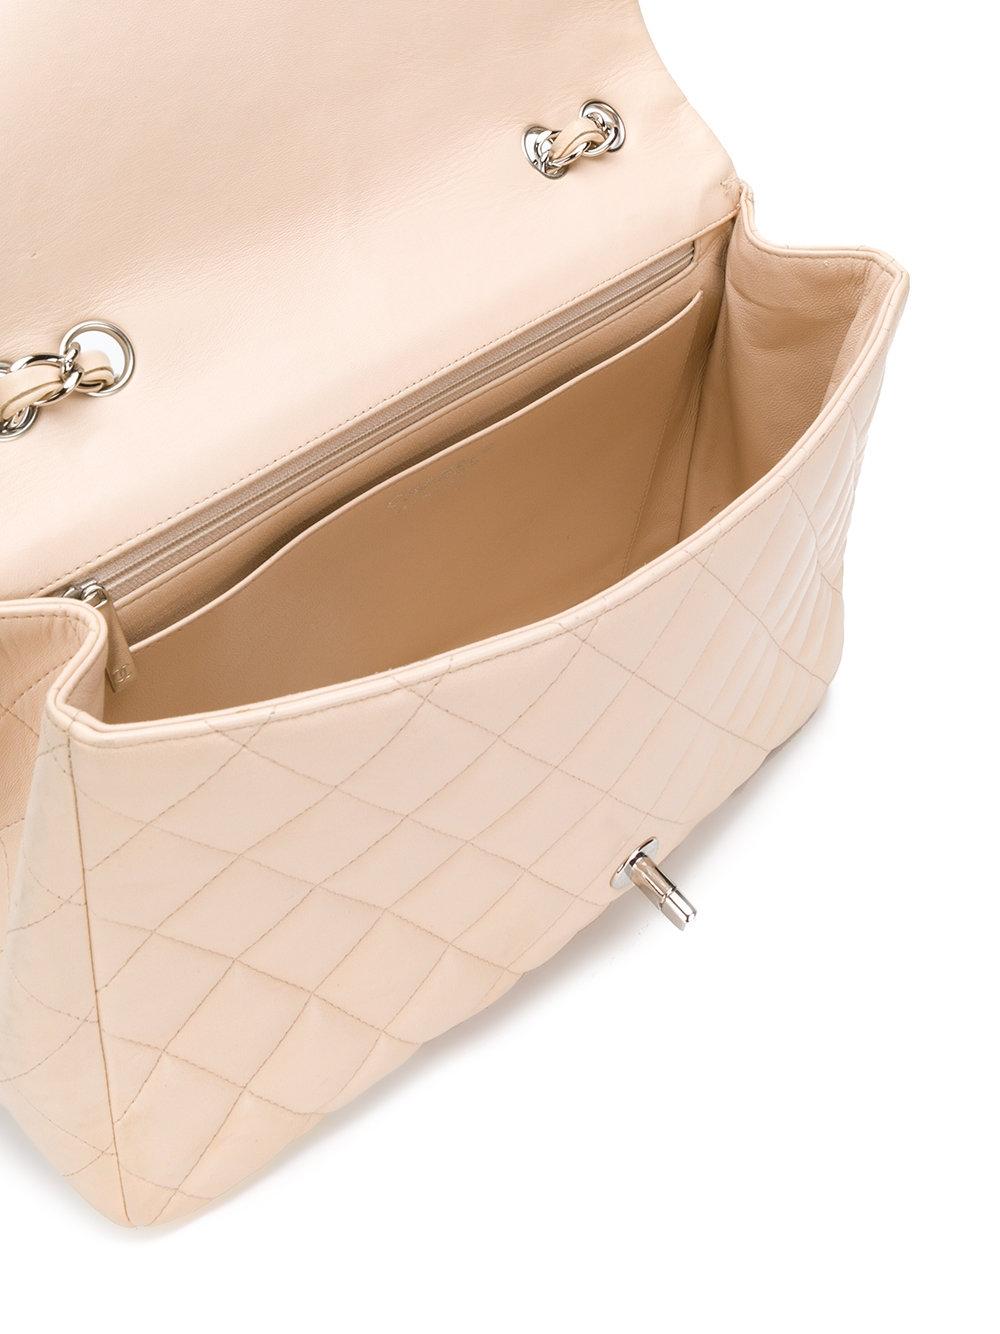 Women's Chanel Jumbo Flap Bag